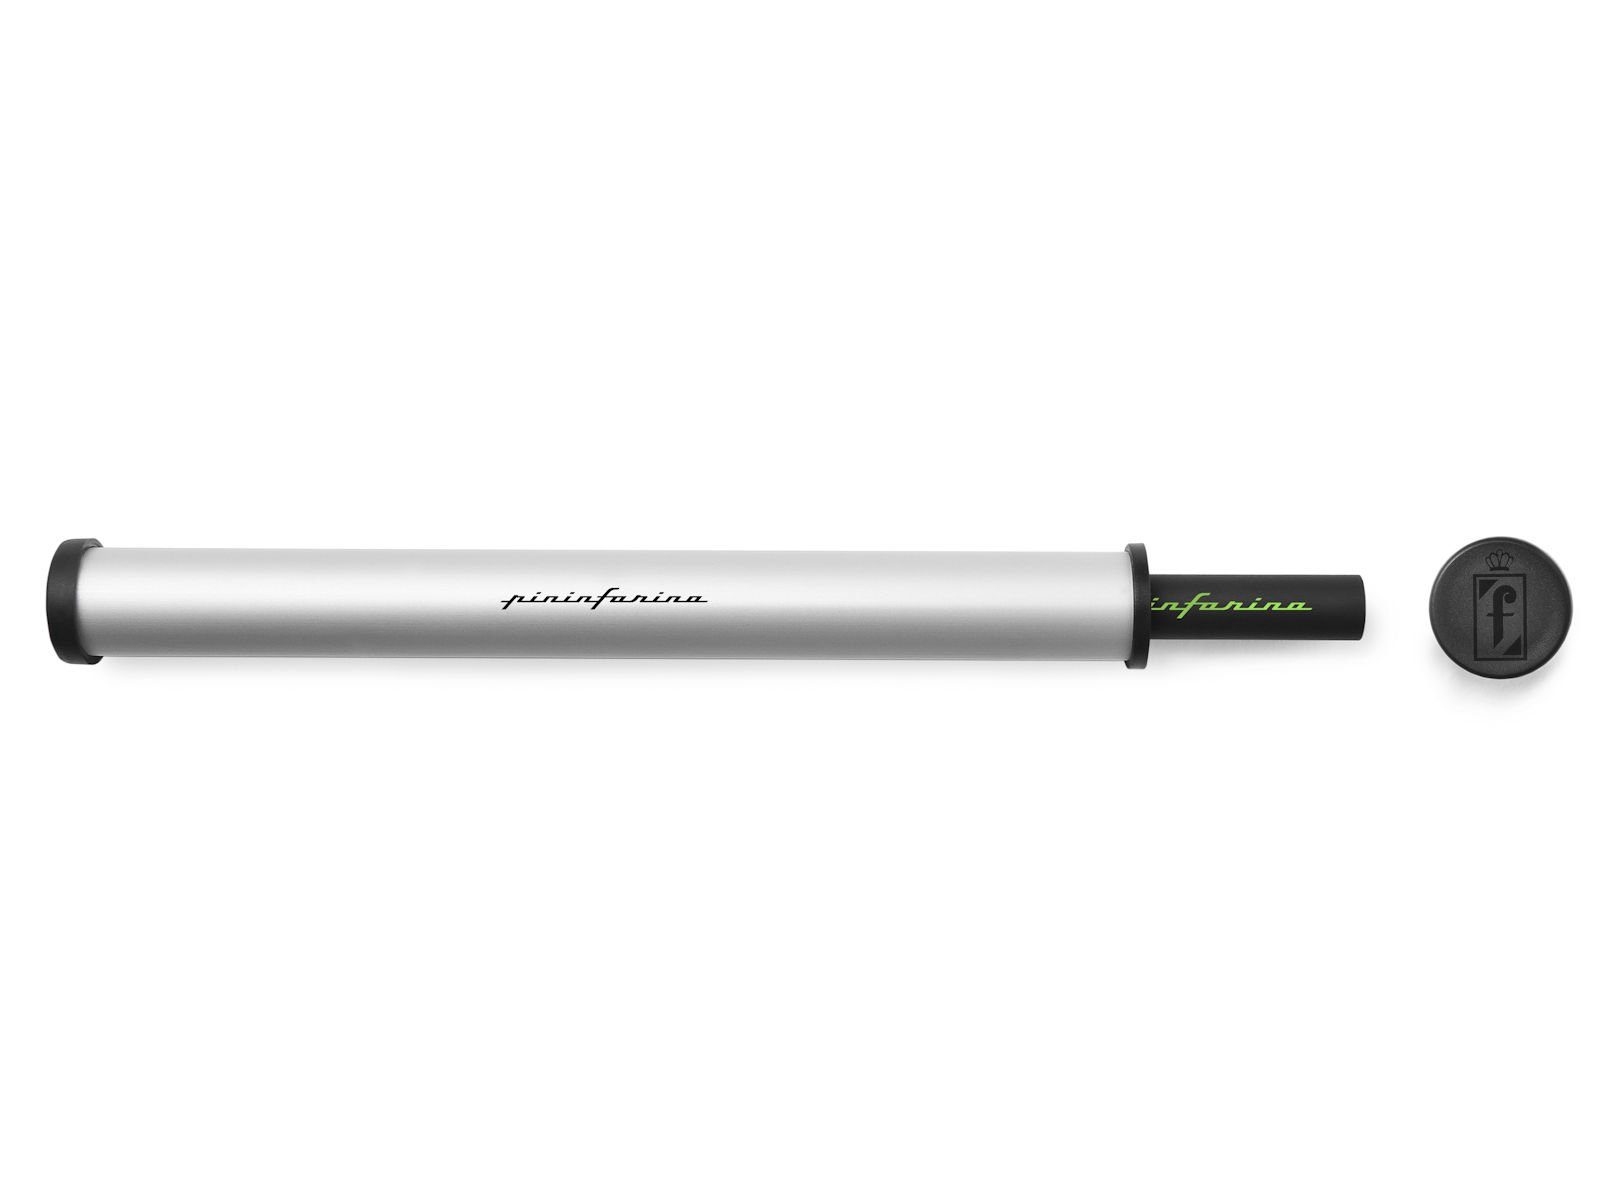 Pininfarina Bleistift Bleistift Grafeex Pininfarina Farbe, 4 (kein Bleier Smart Set) Pencil Schreibgerät Grün